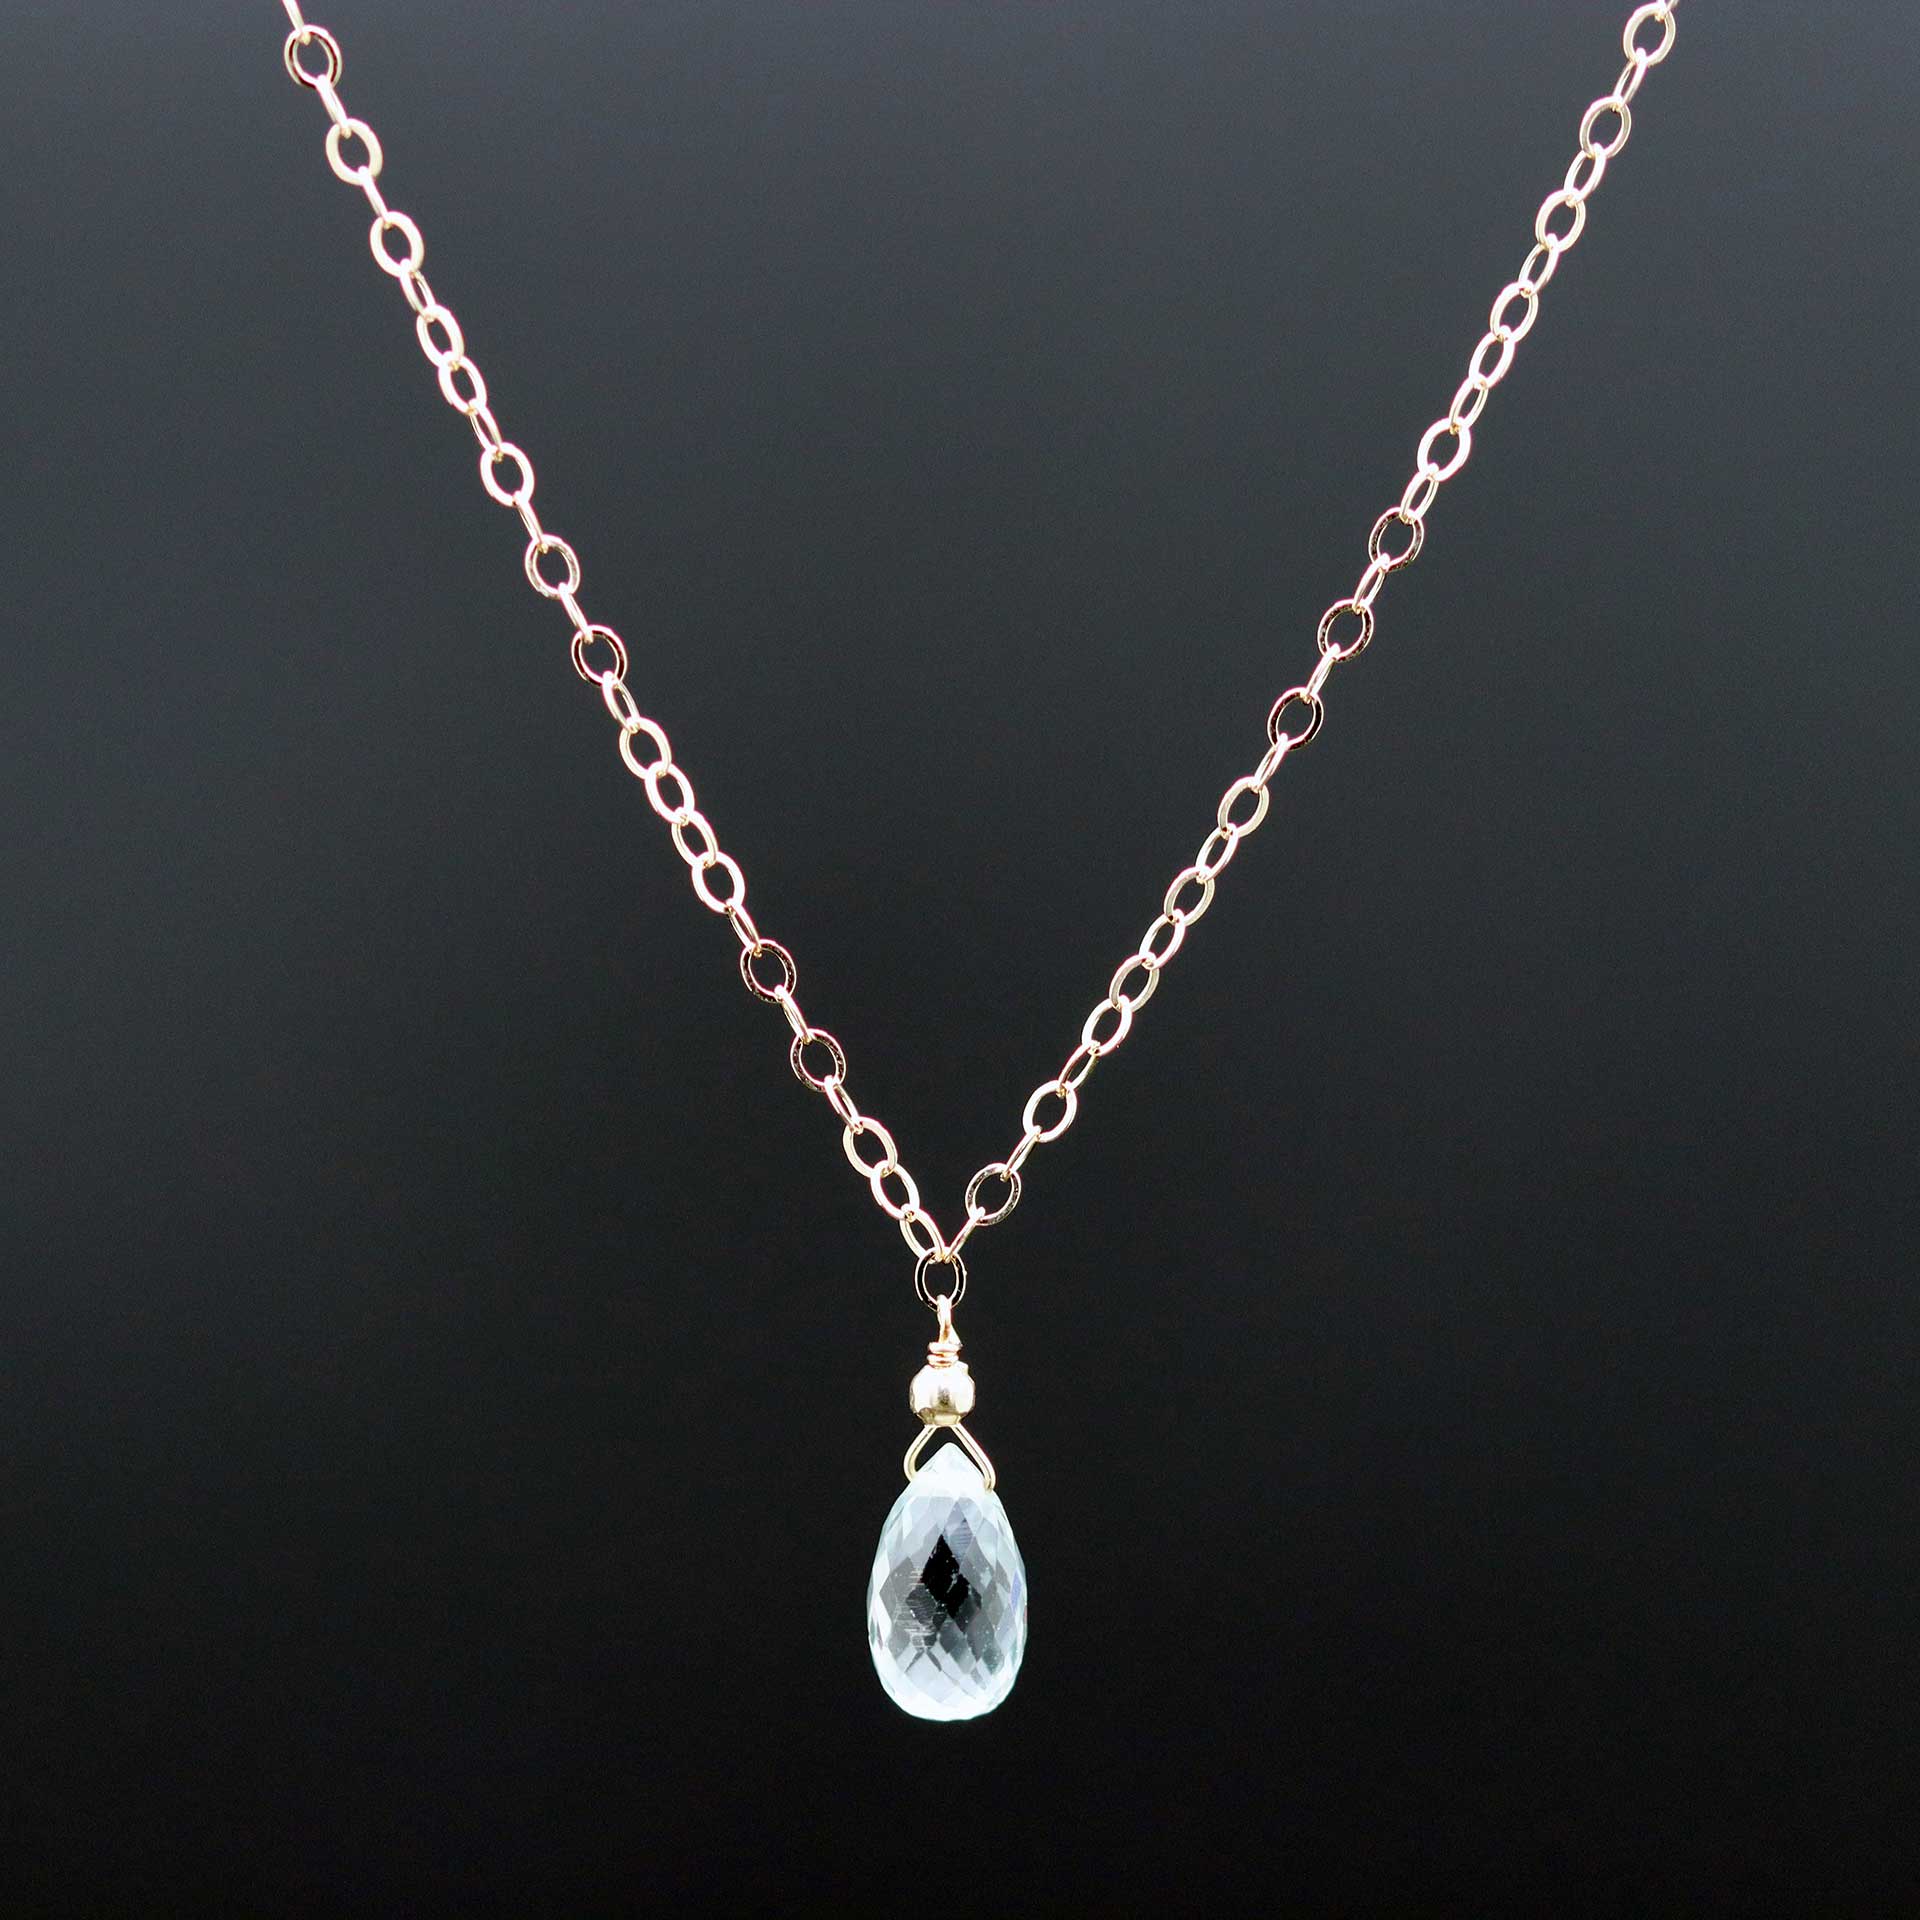 Blue Sapphire Drop Necklace